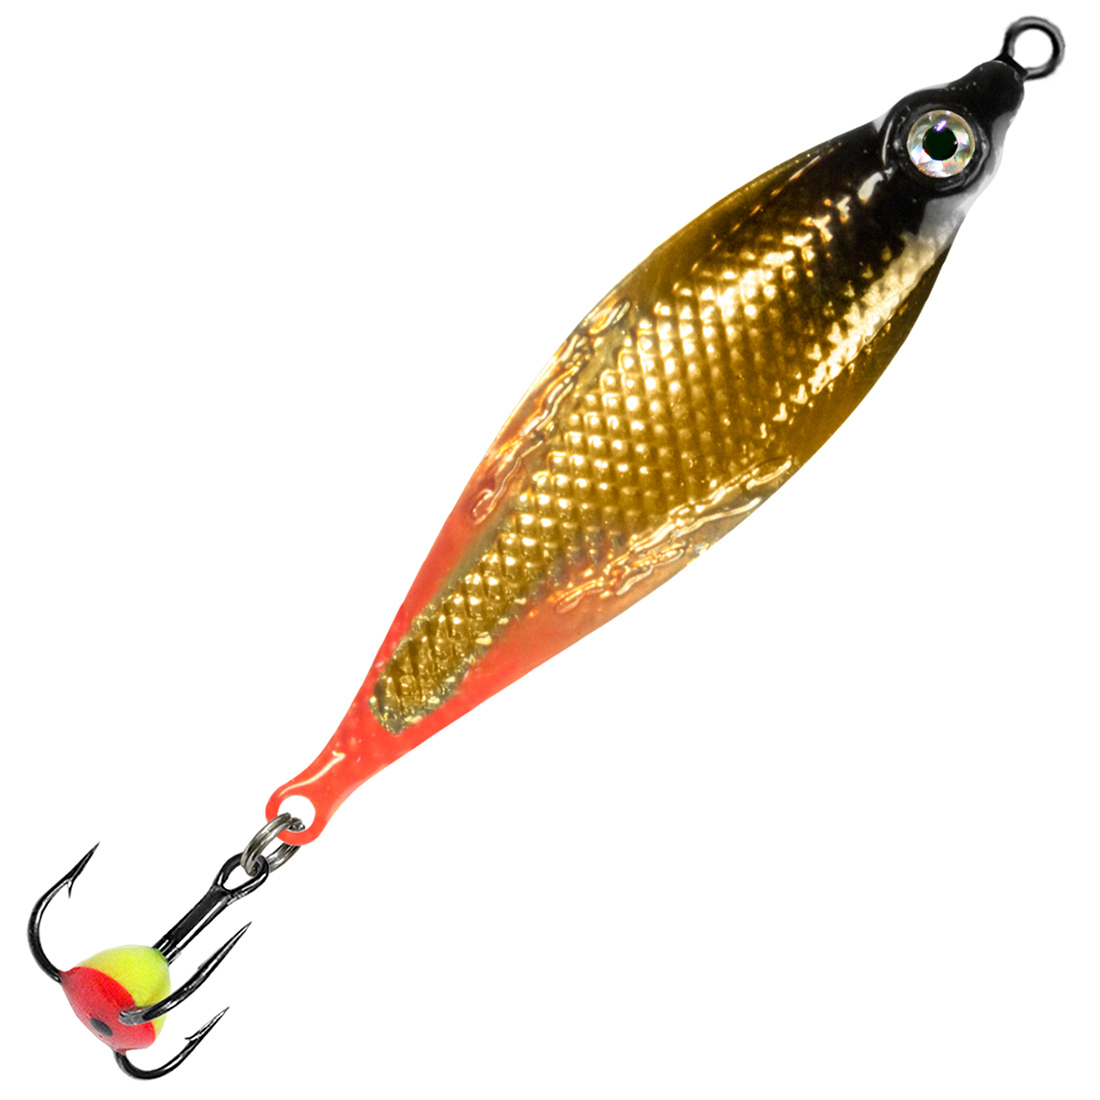 Блесна для рыбалки зимняя AQUA КОБРА 7,0g цвет 08 (золото-серебро, красный) 1 штука.